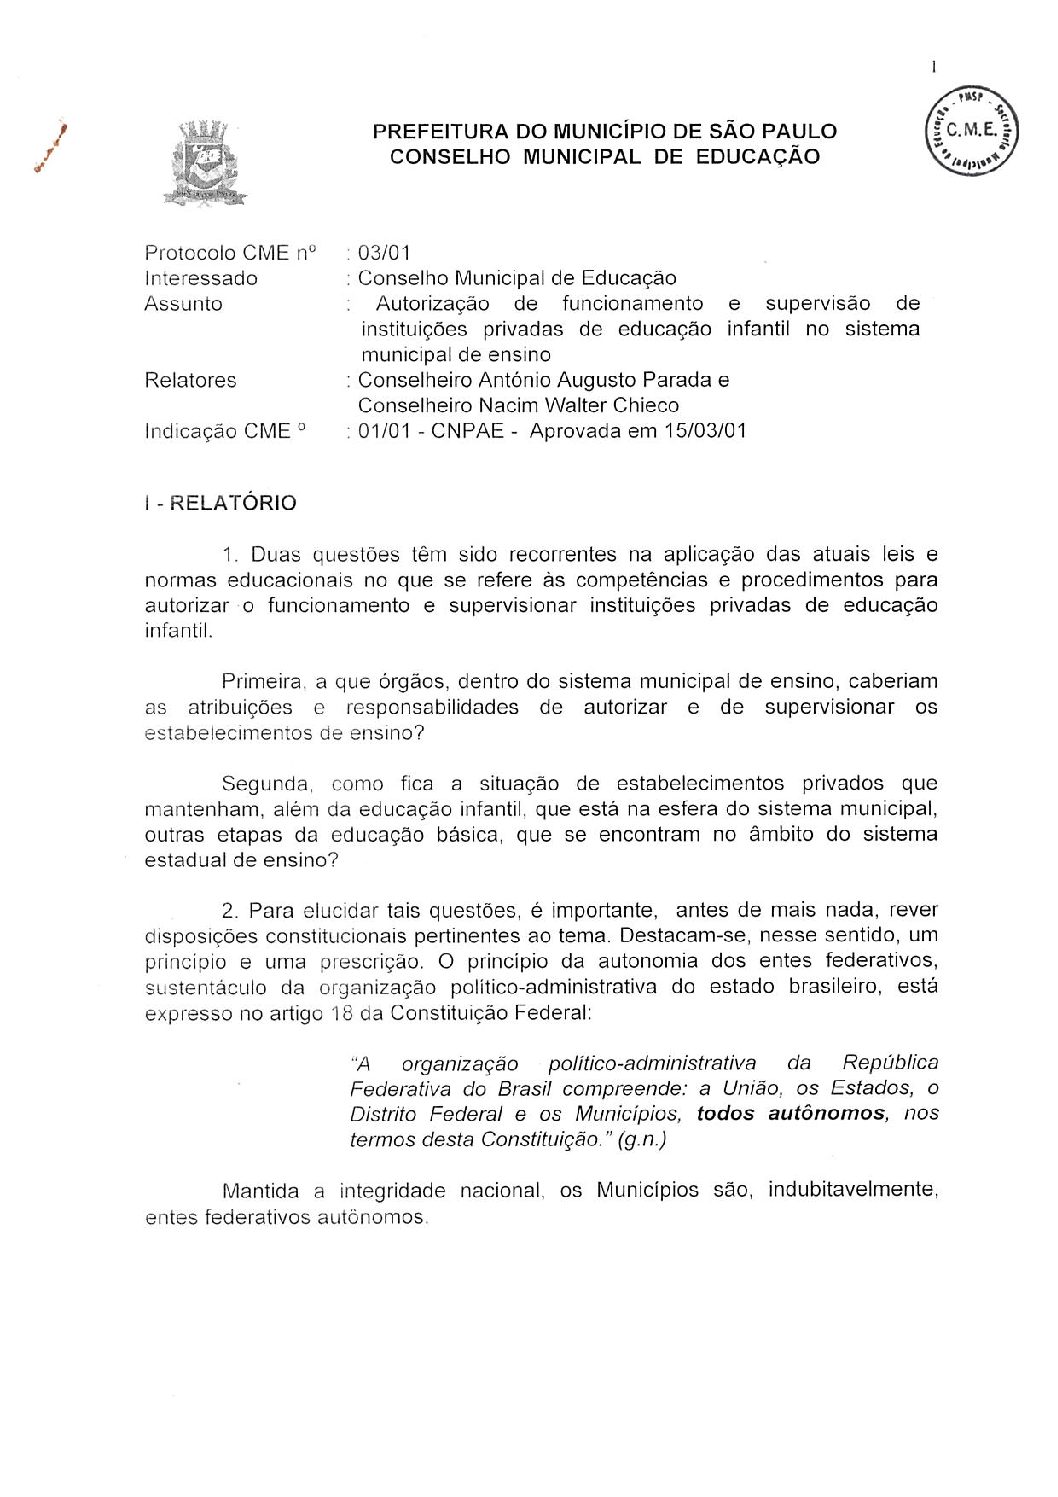 Indicação CME nº 01/2001 - Autorização de funcionamento e supervisão de instituições privadas de Educação Infantil no sistema municipal de ensino